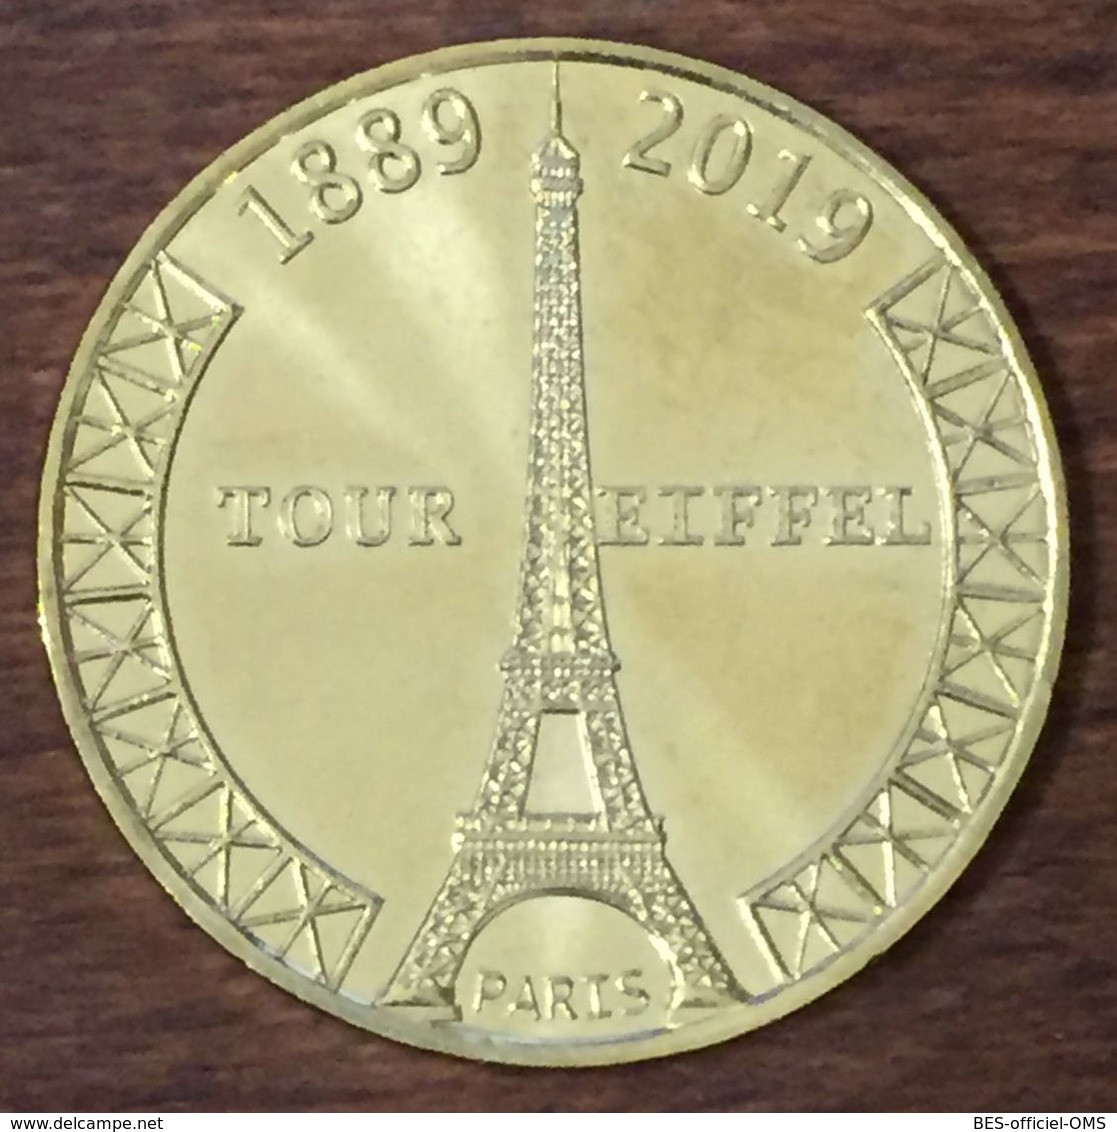 75007 PARIS TOUR EIFFEL 130 ANS MDP 2019 MÉDAILLE SOUVENIR MONNAIE DE PARIS JETON TOURISTIQUE MEDALS TOKENS COINS FRENCH - 2019